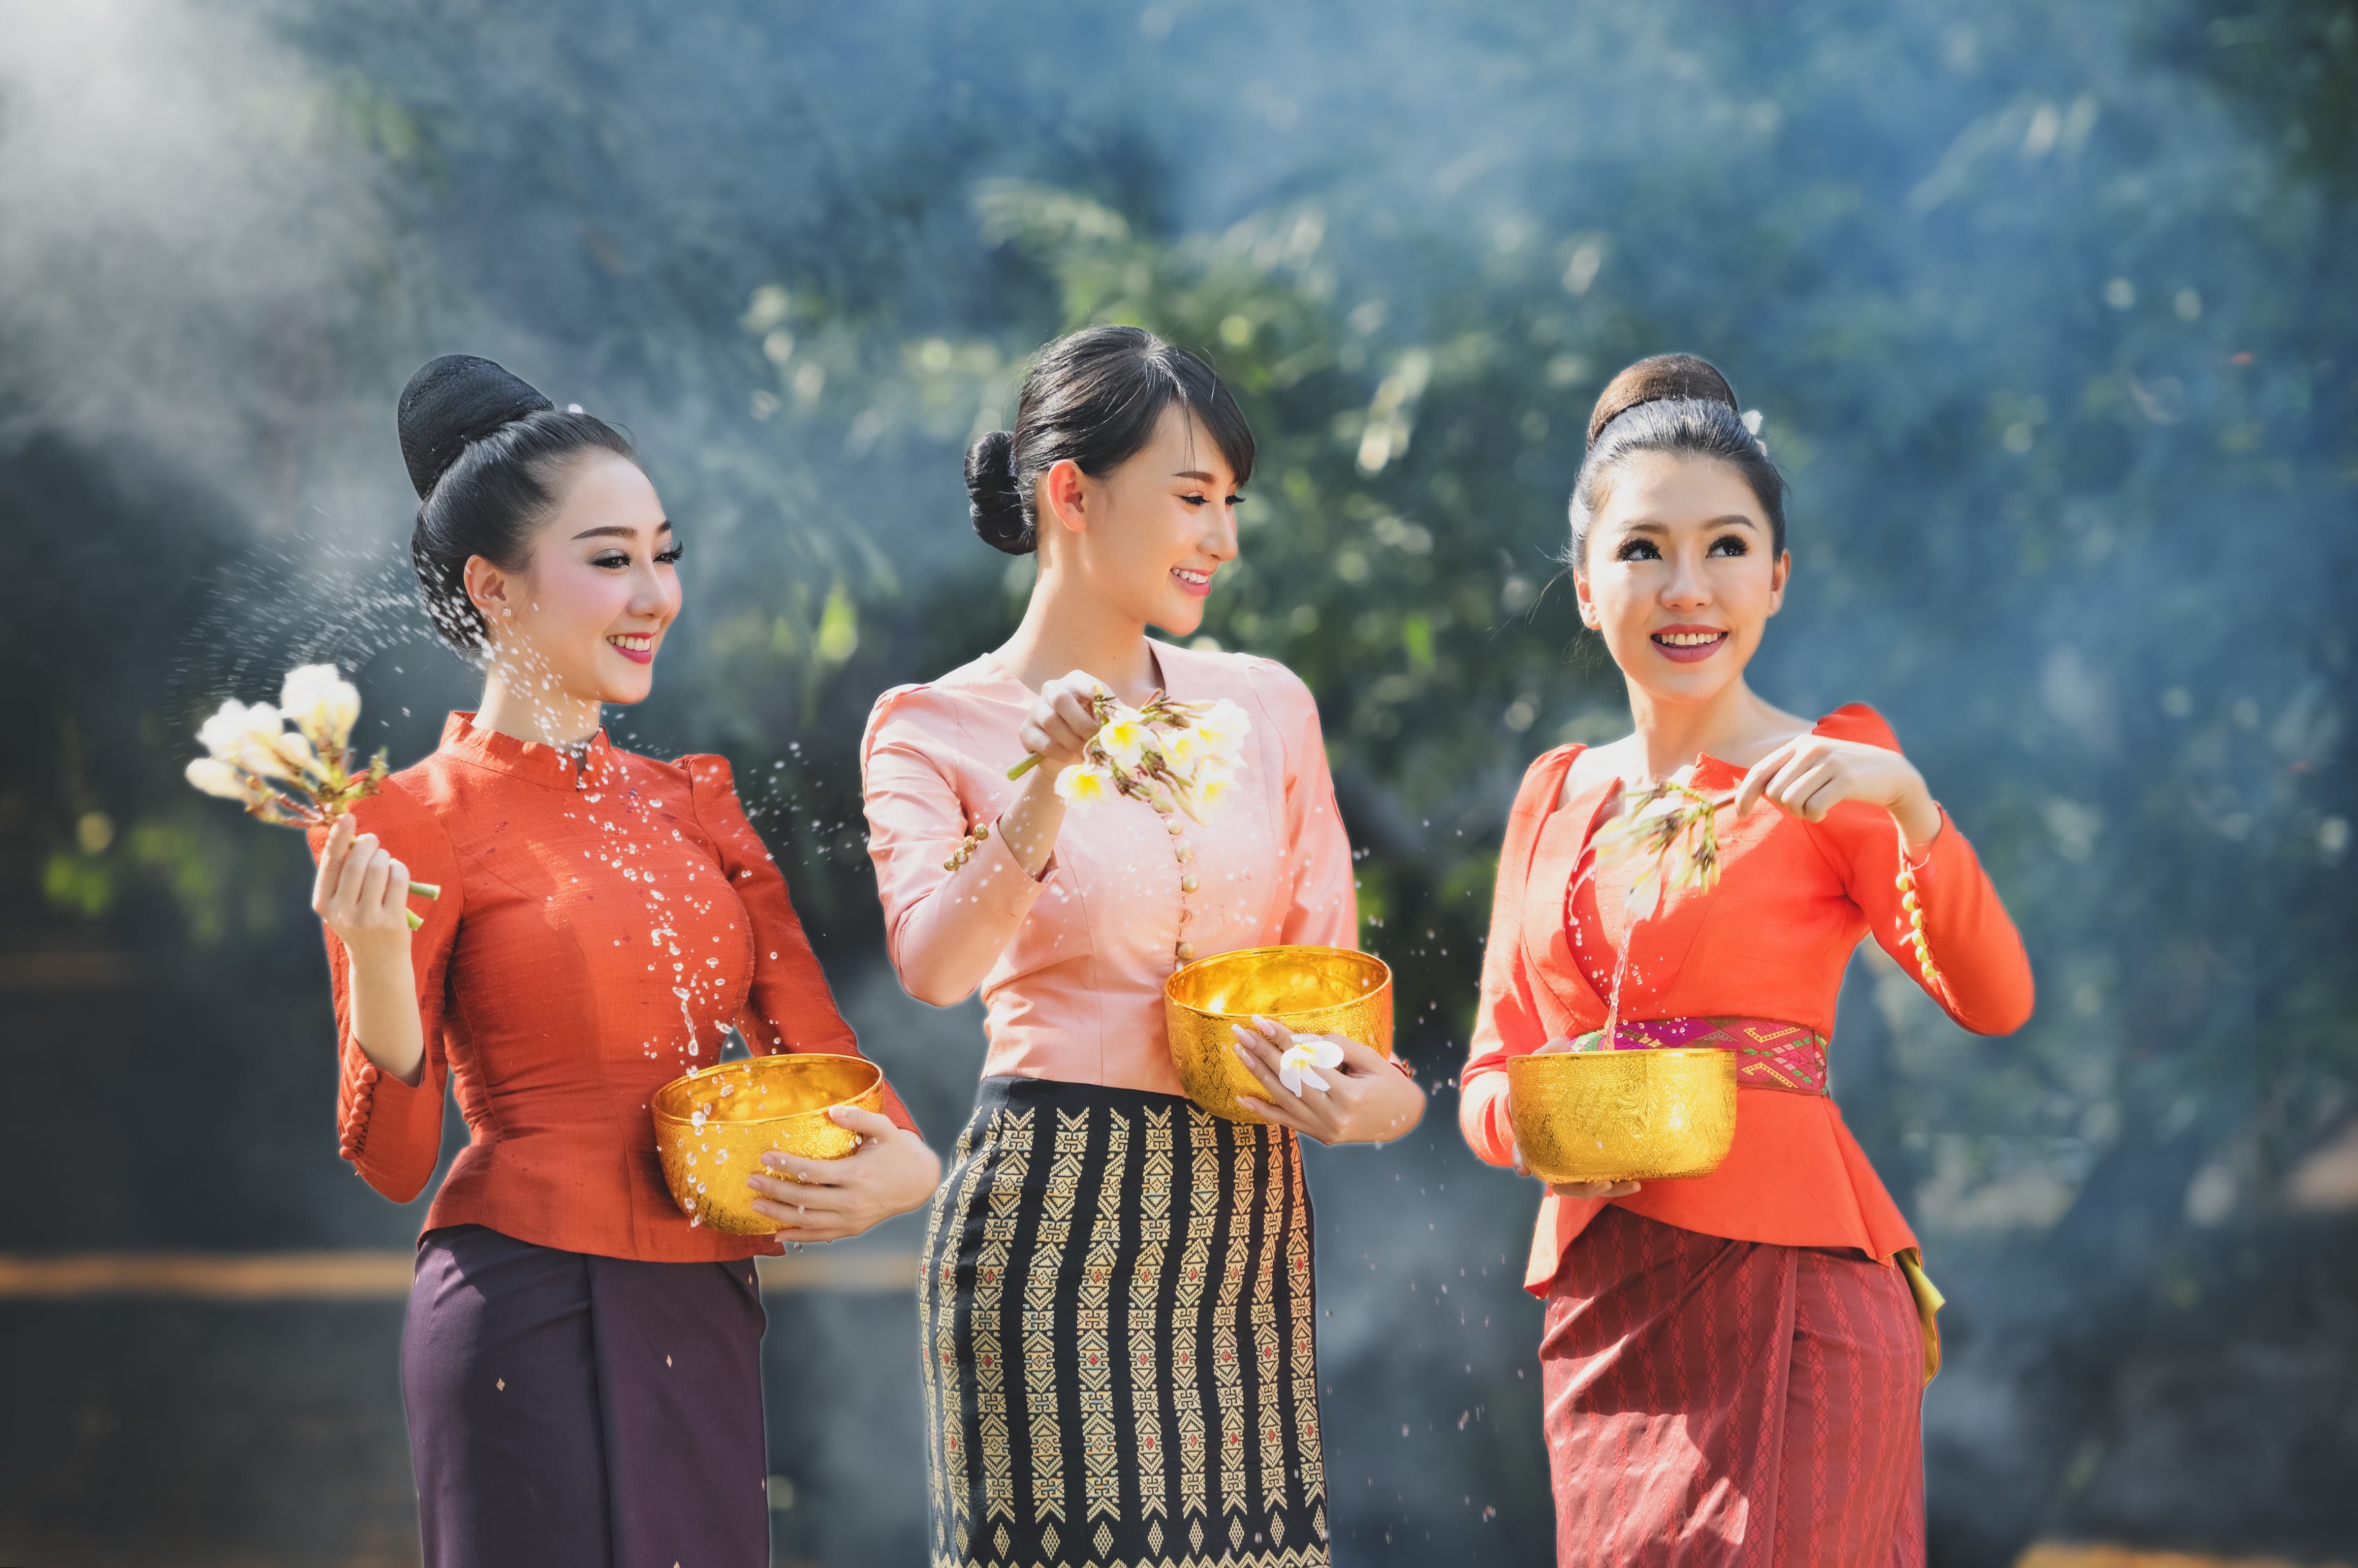 タイ人女性 民族衣装 タイnavi